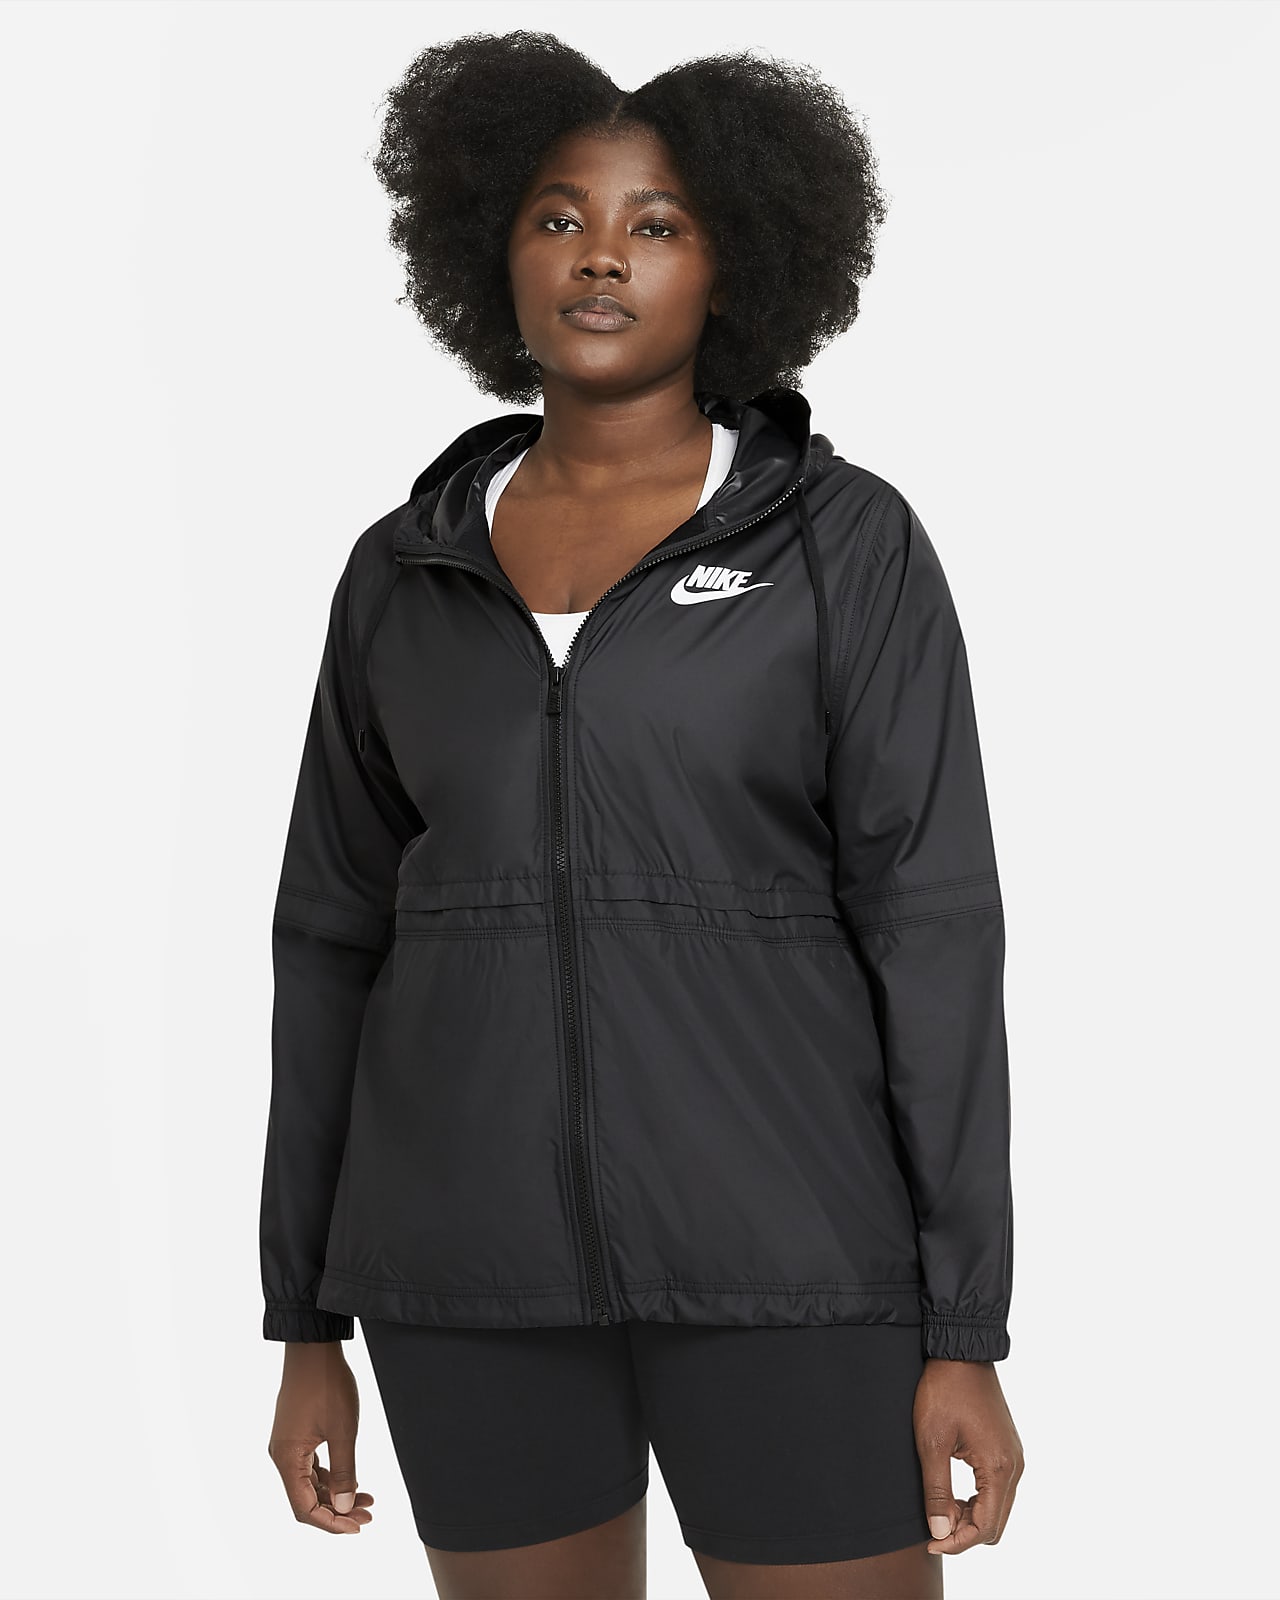 Nike Sportswear Women's Woven Jacket (Plus size)